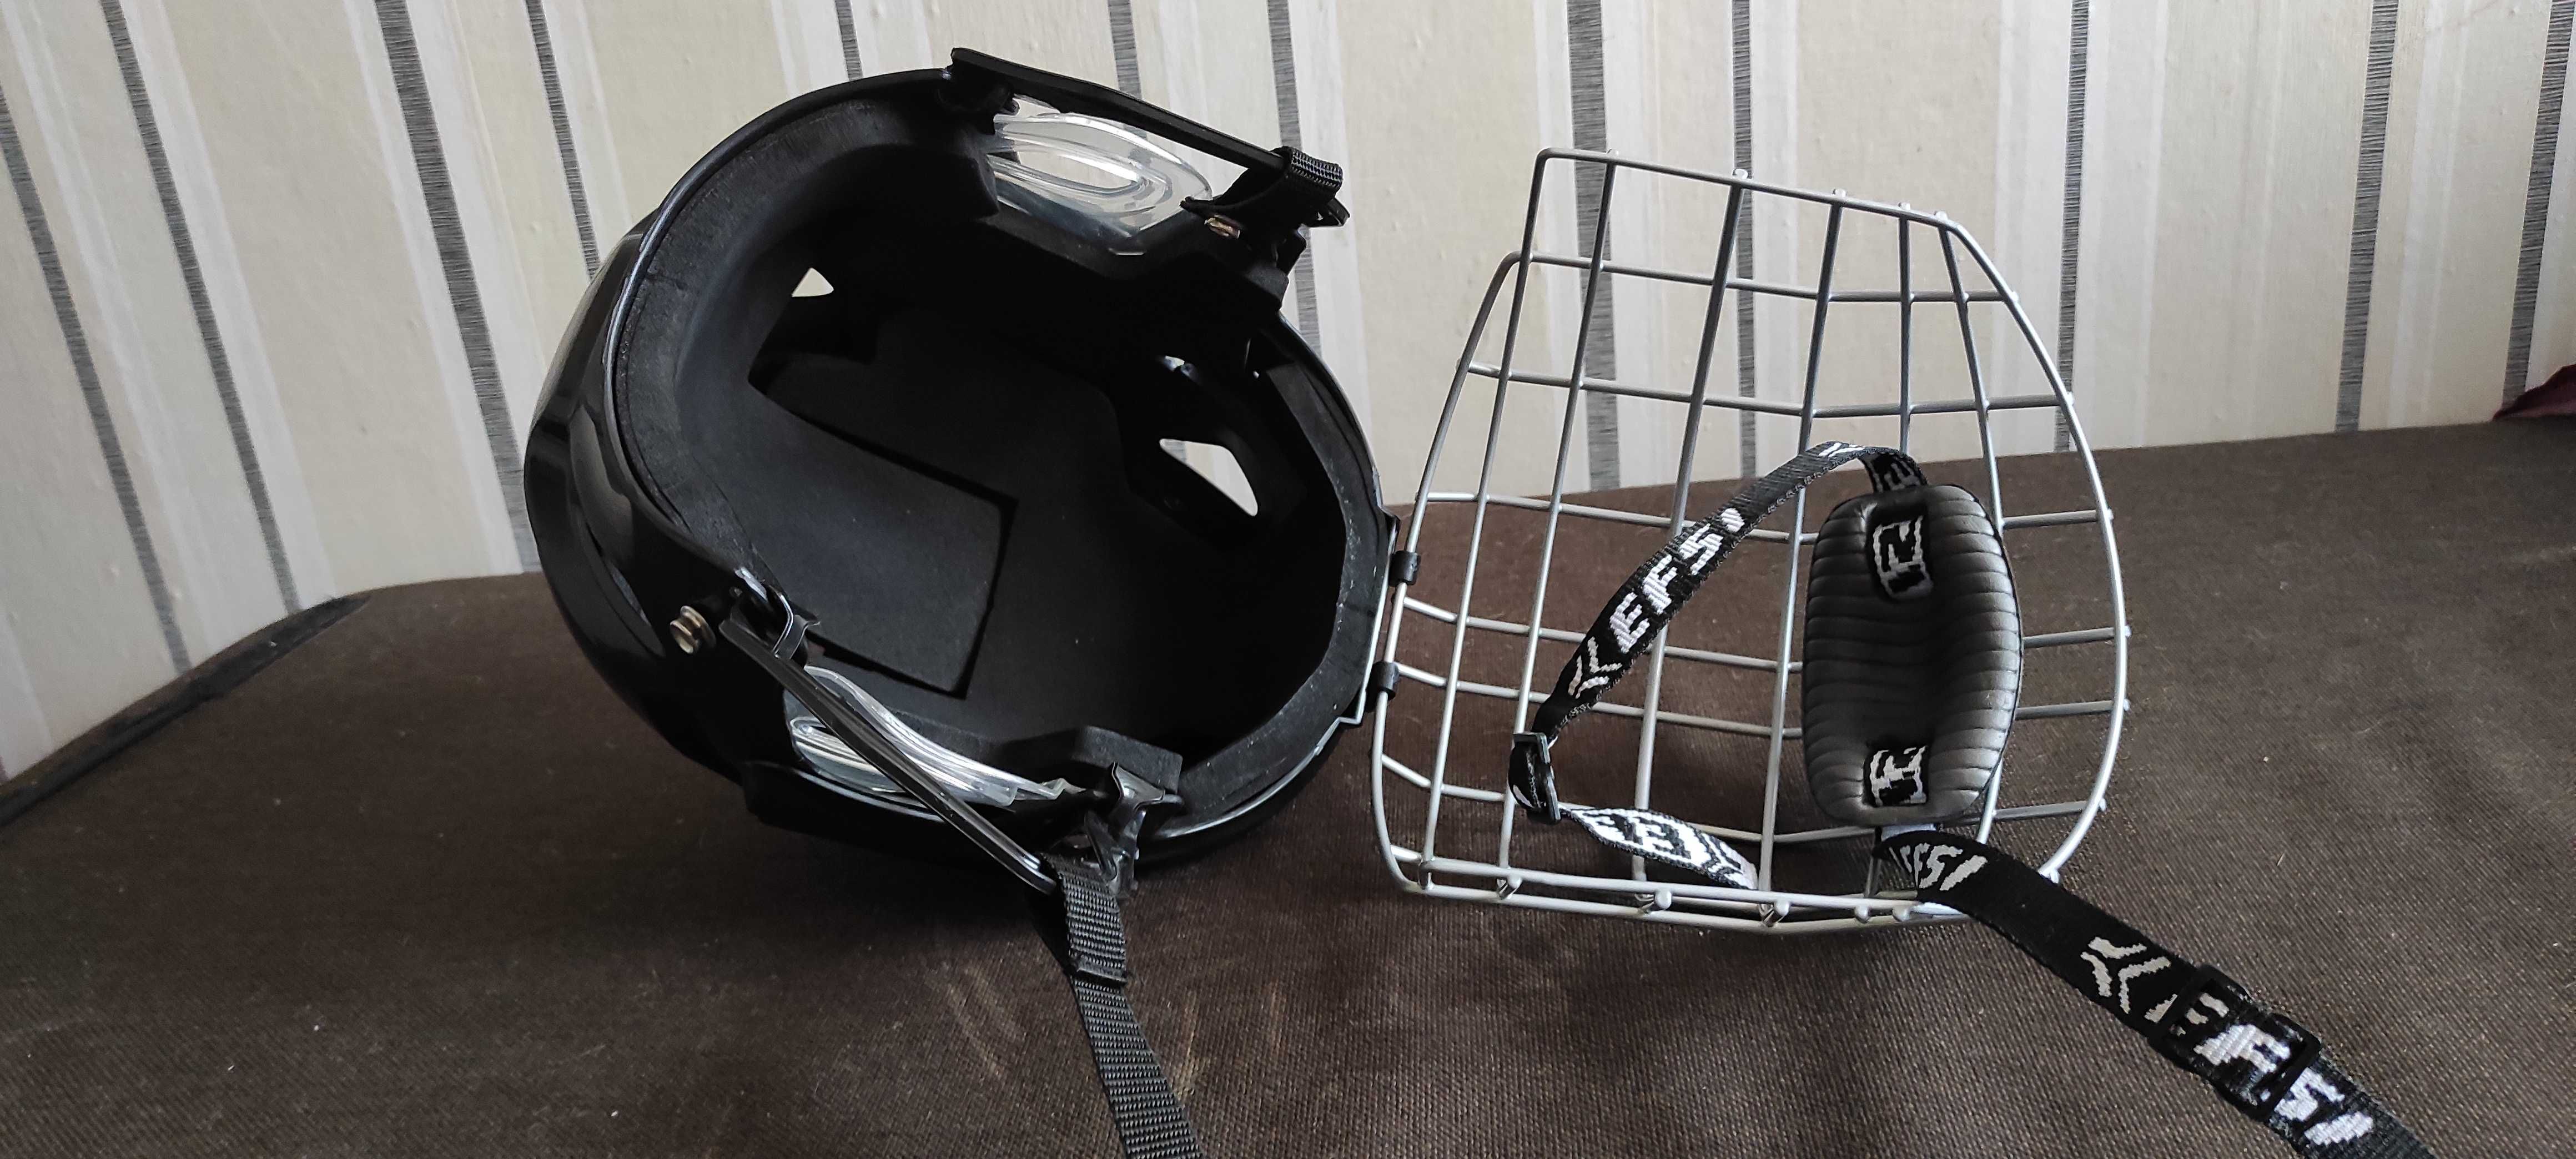 Хоккейный шлем с маской.